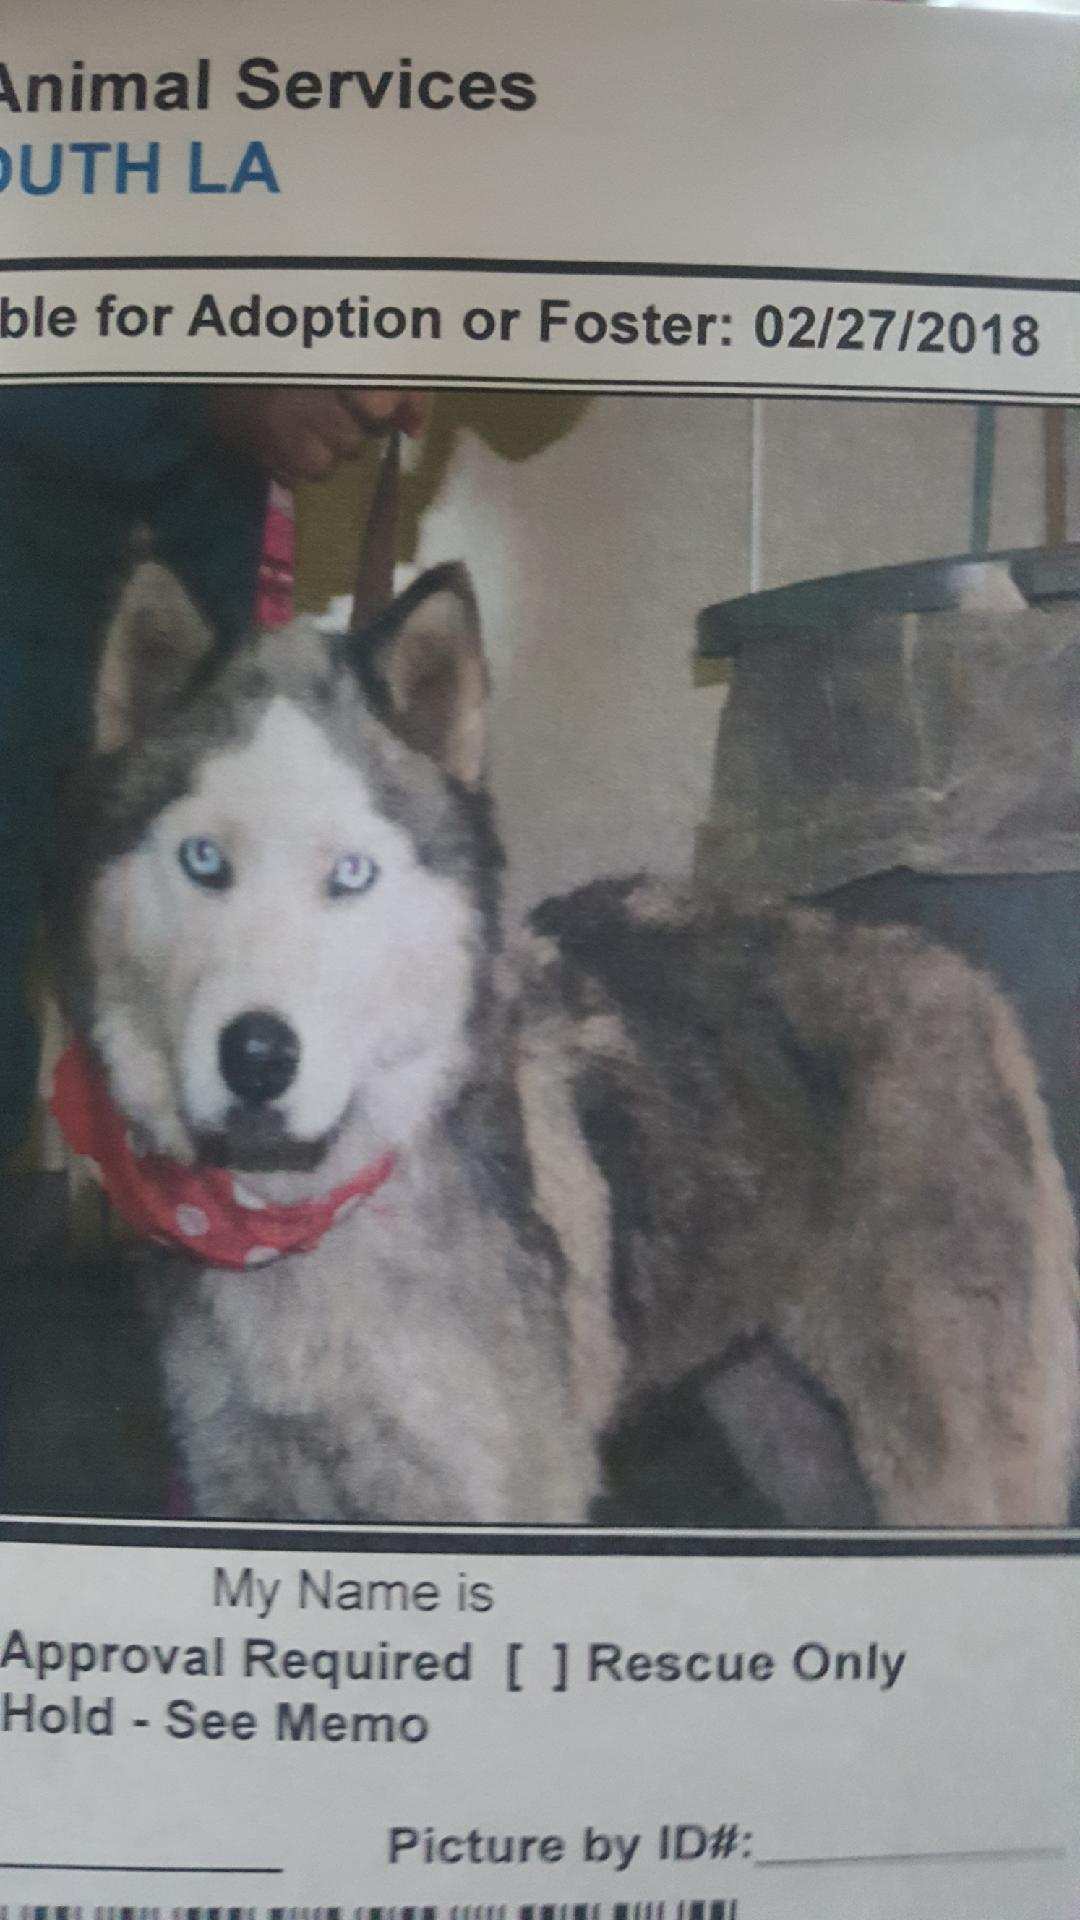 Image of Luna, Lost Dog